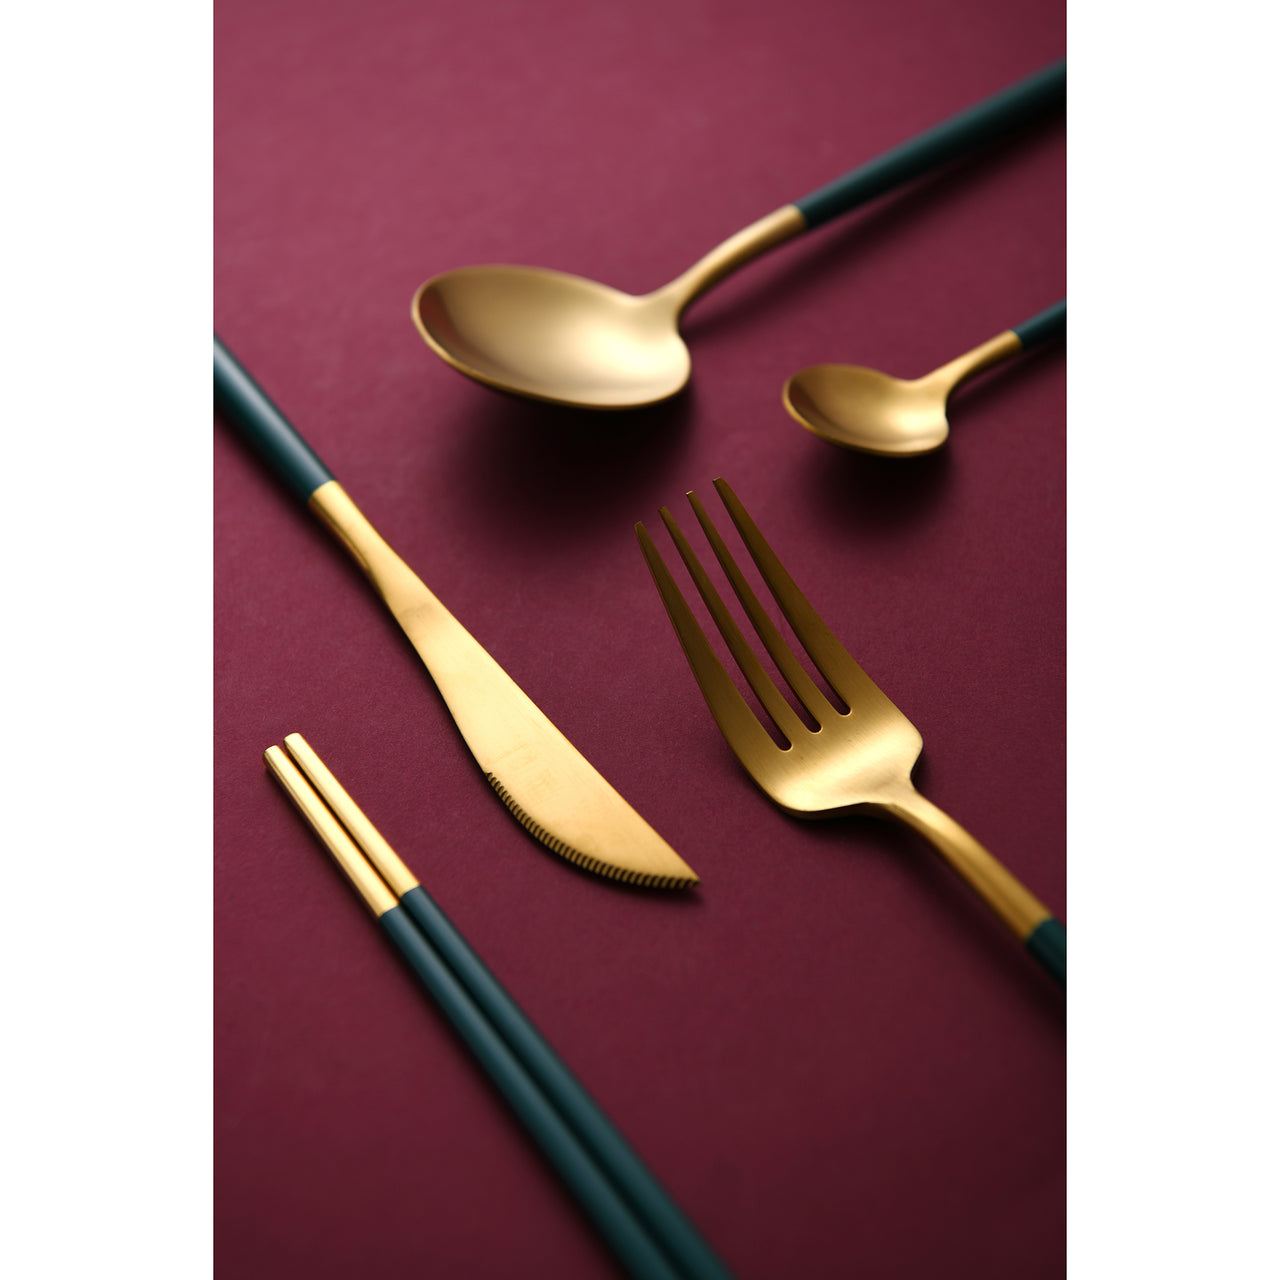 30 Piece Green & Gold Cutlery Set